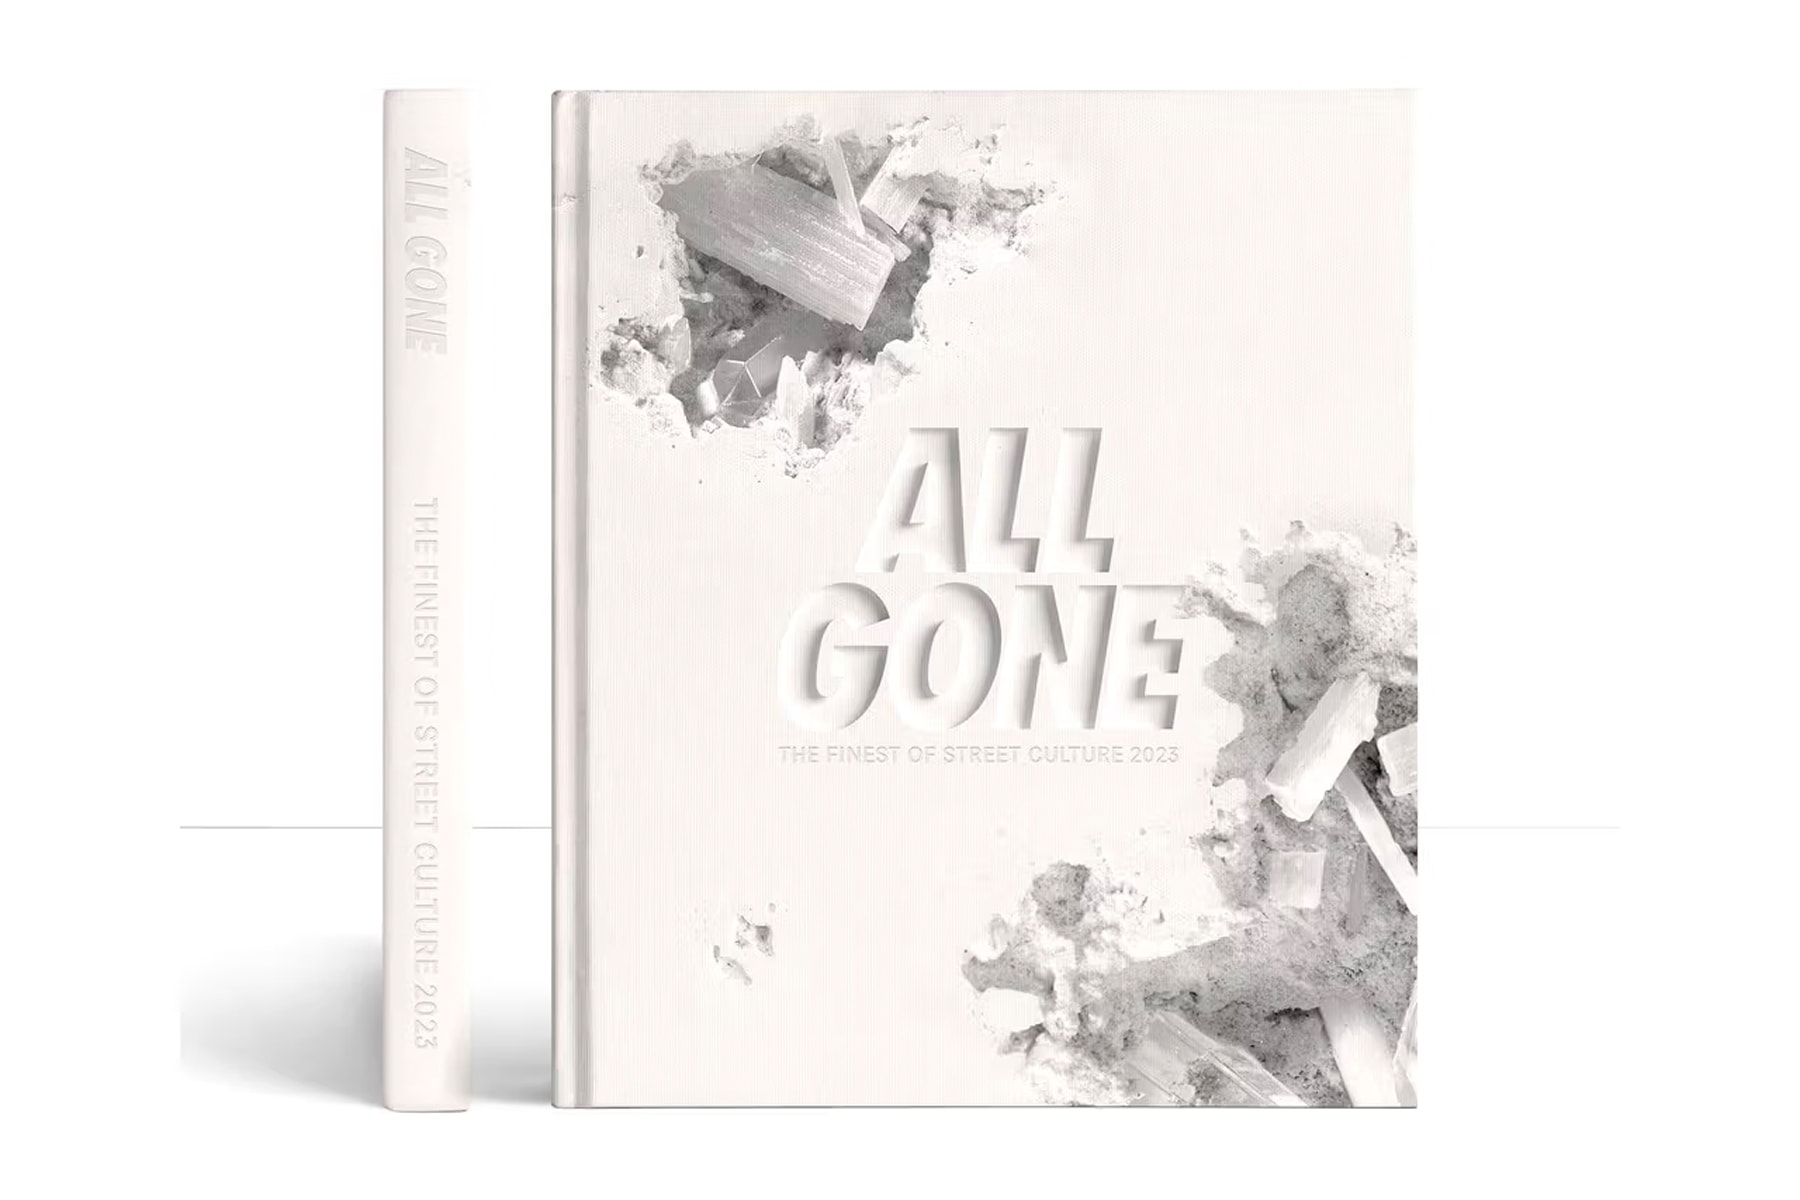 Michael Dupouy 攜手 Daniel Arsham 打造《All Gone 2023》書籍封面